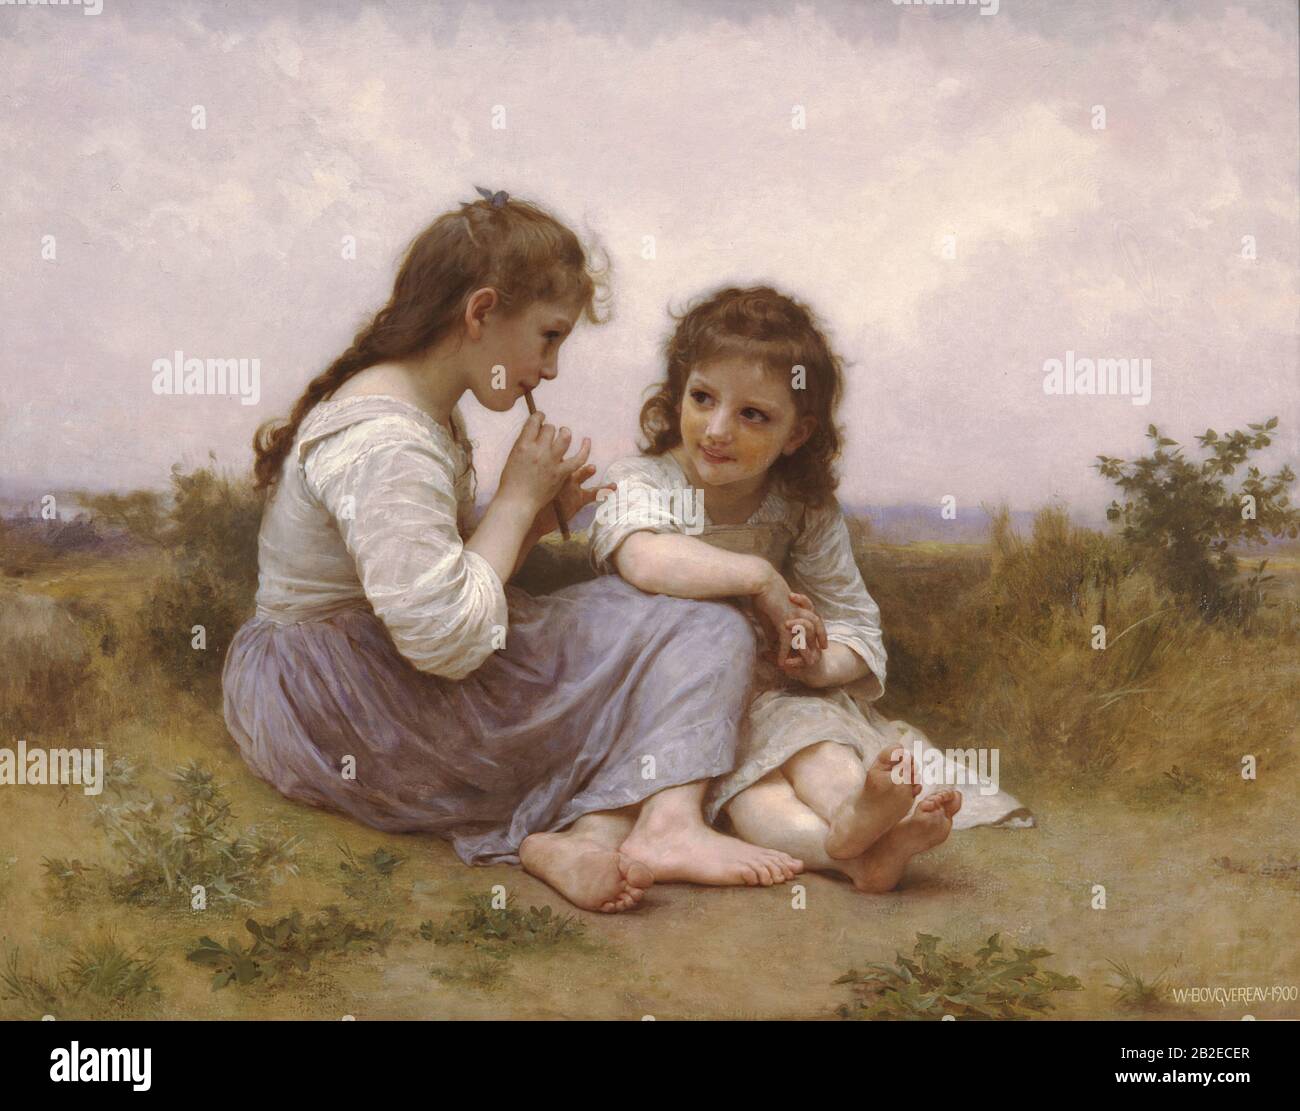 A Childhood Idyll (1900) Pittura accademica francese di William-Adolphe Bouguereau - altissima risoluzione e qualità dell'immagine Foto Stock